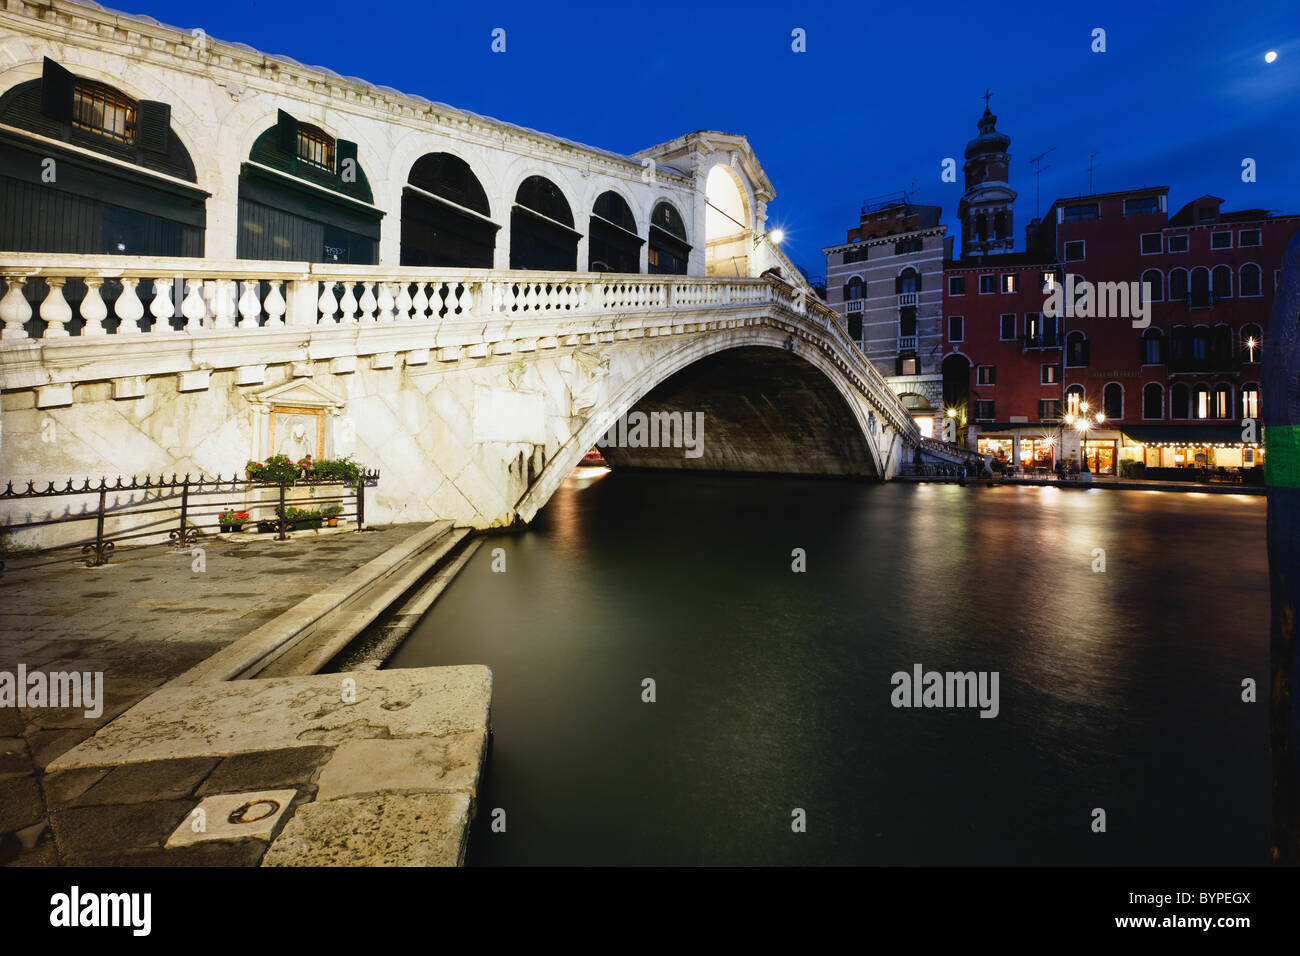 Rialto Bridge At Night, Venice, Italy Stock Photo